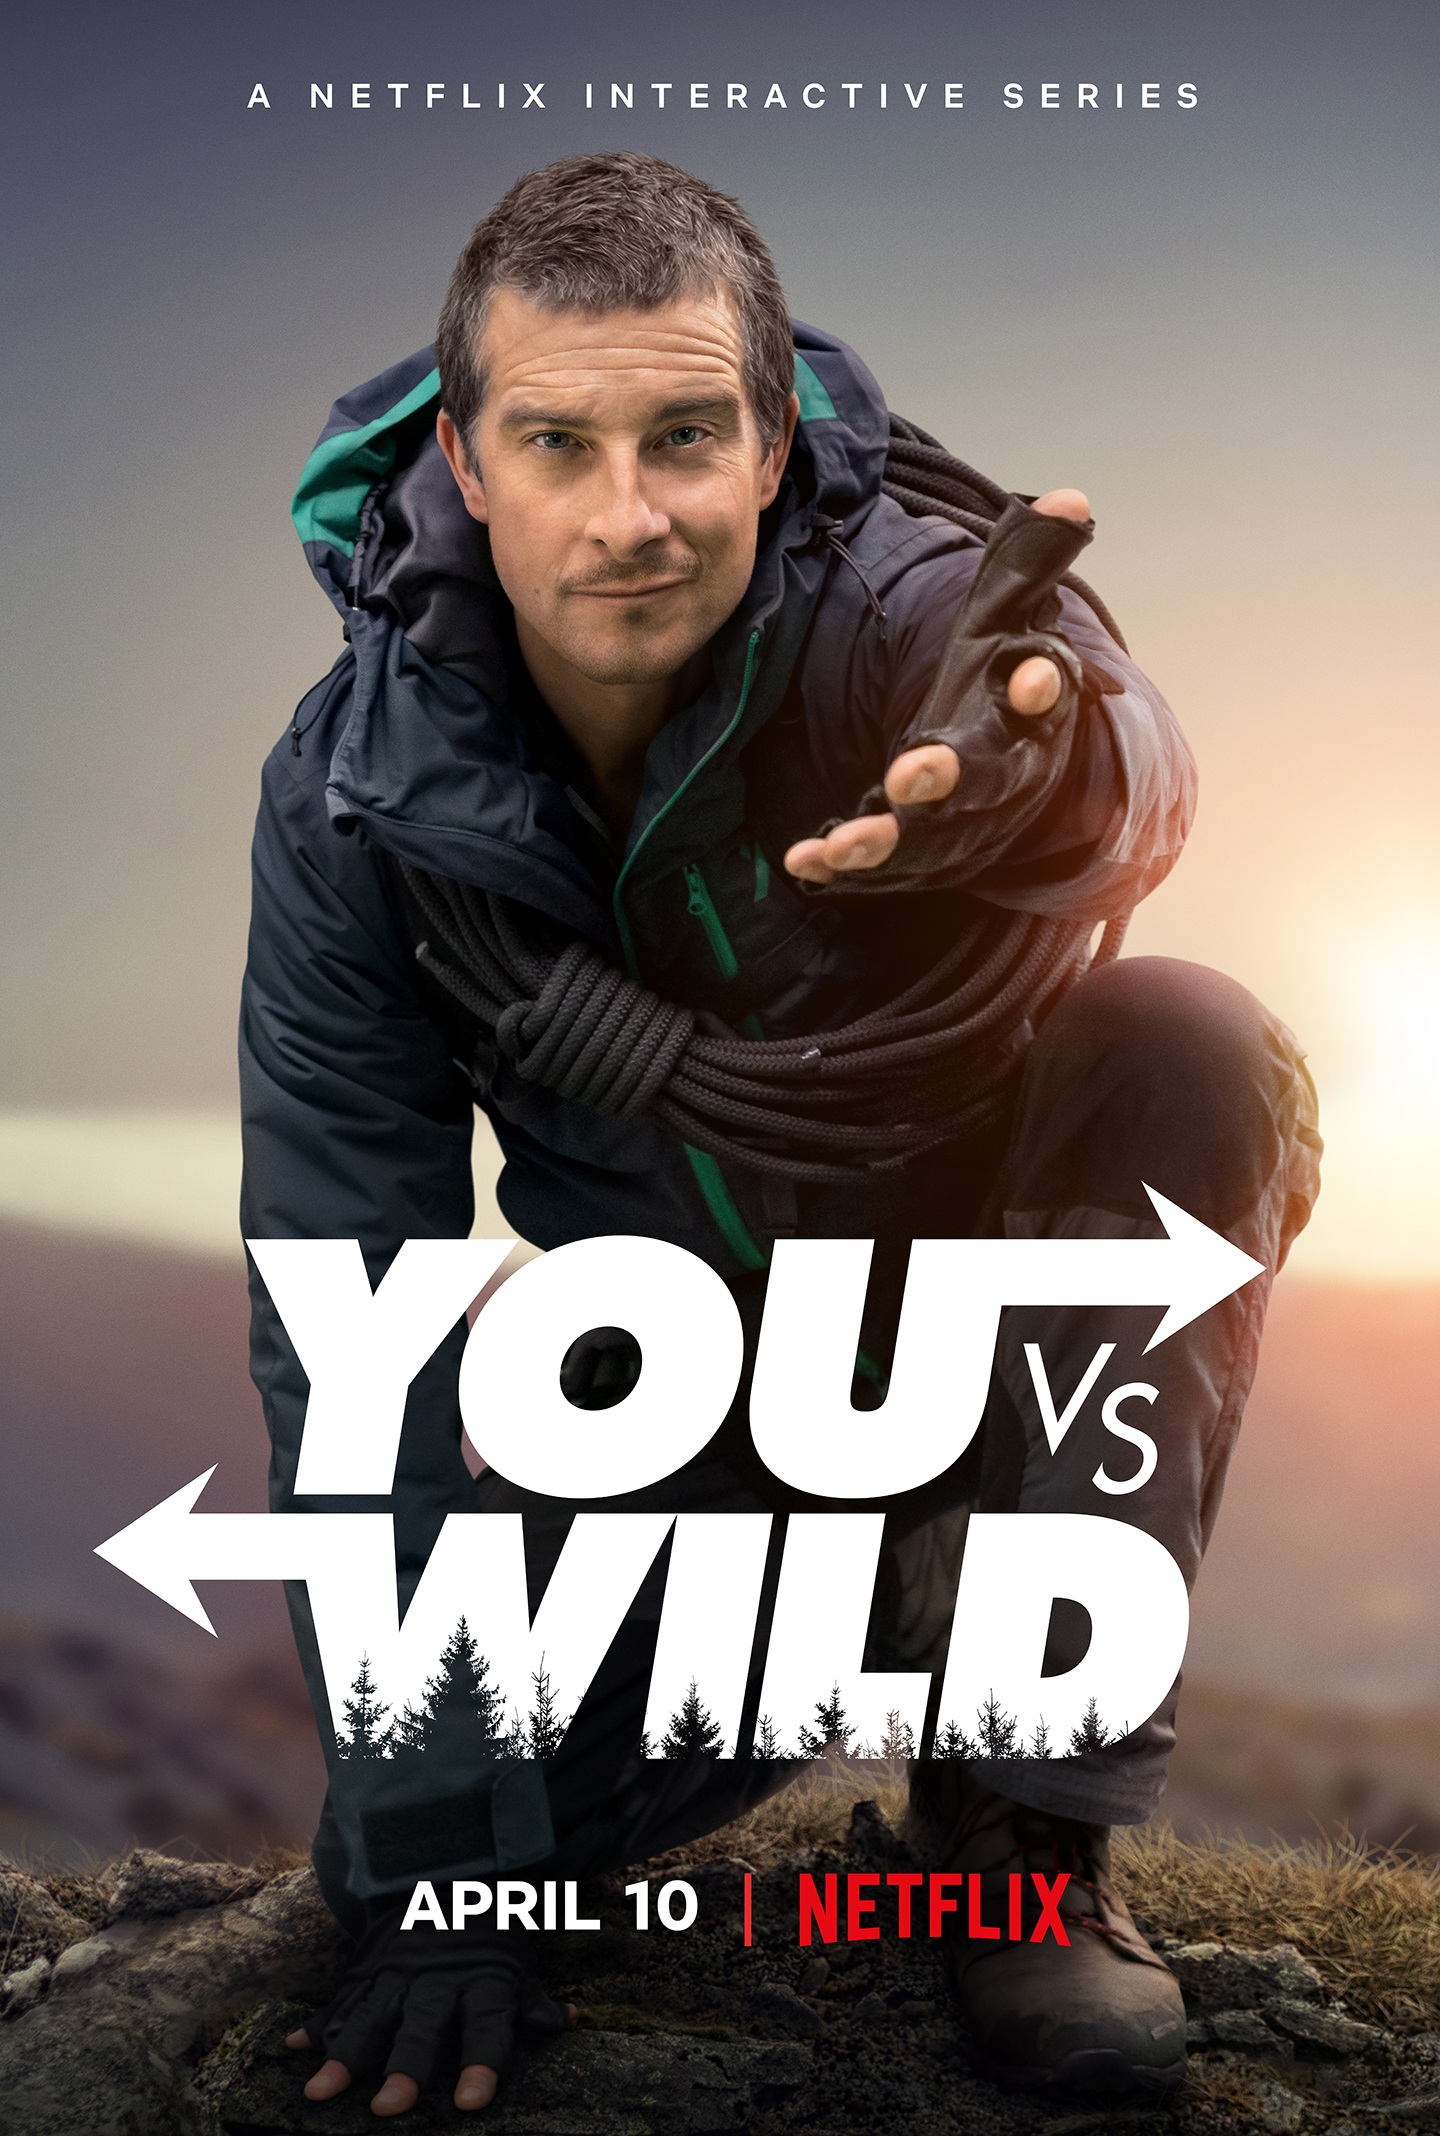 'You v.s Wild', la nueva serie interactiva de Netflix protagonizada por Bear Grylls